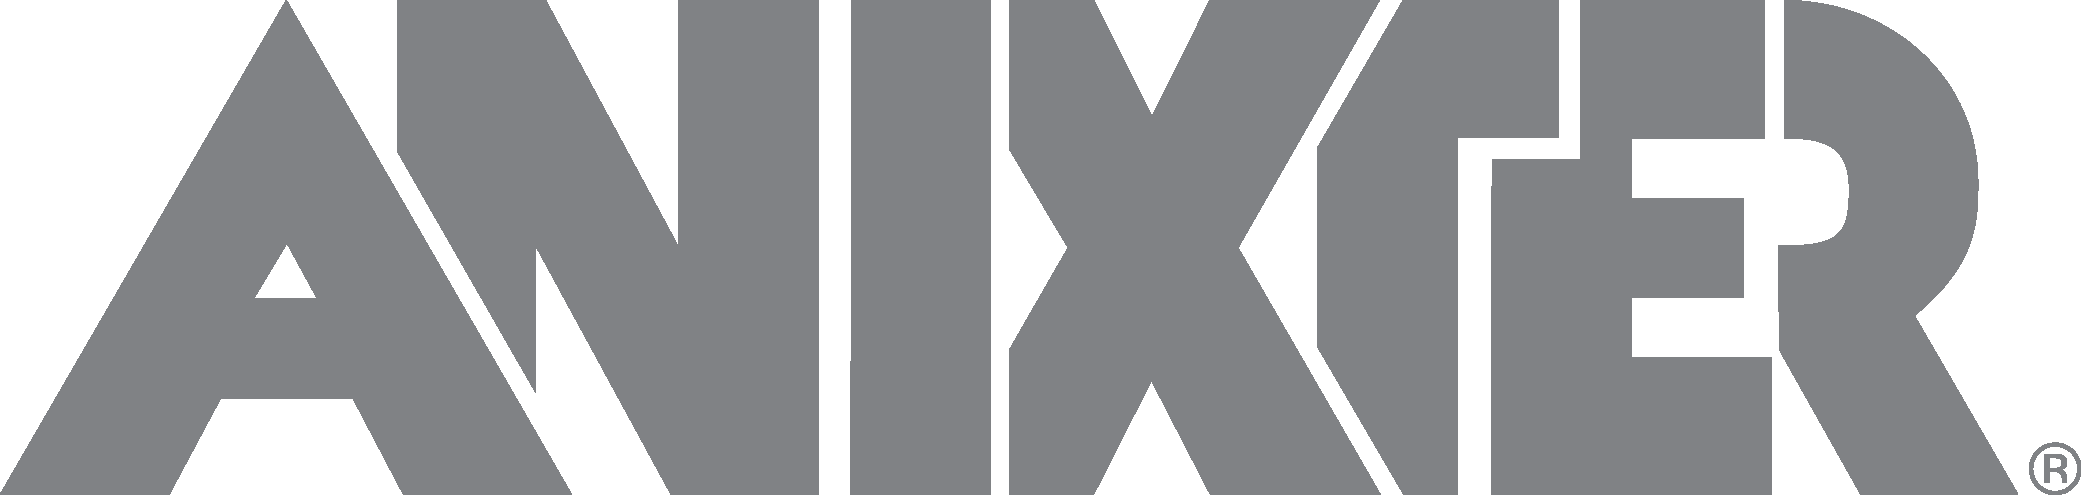 Anixter Logo Download Vector.